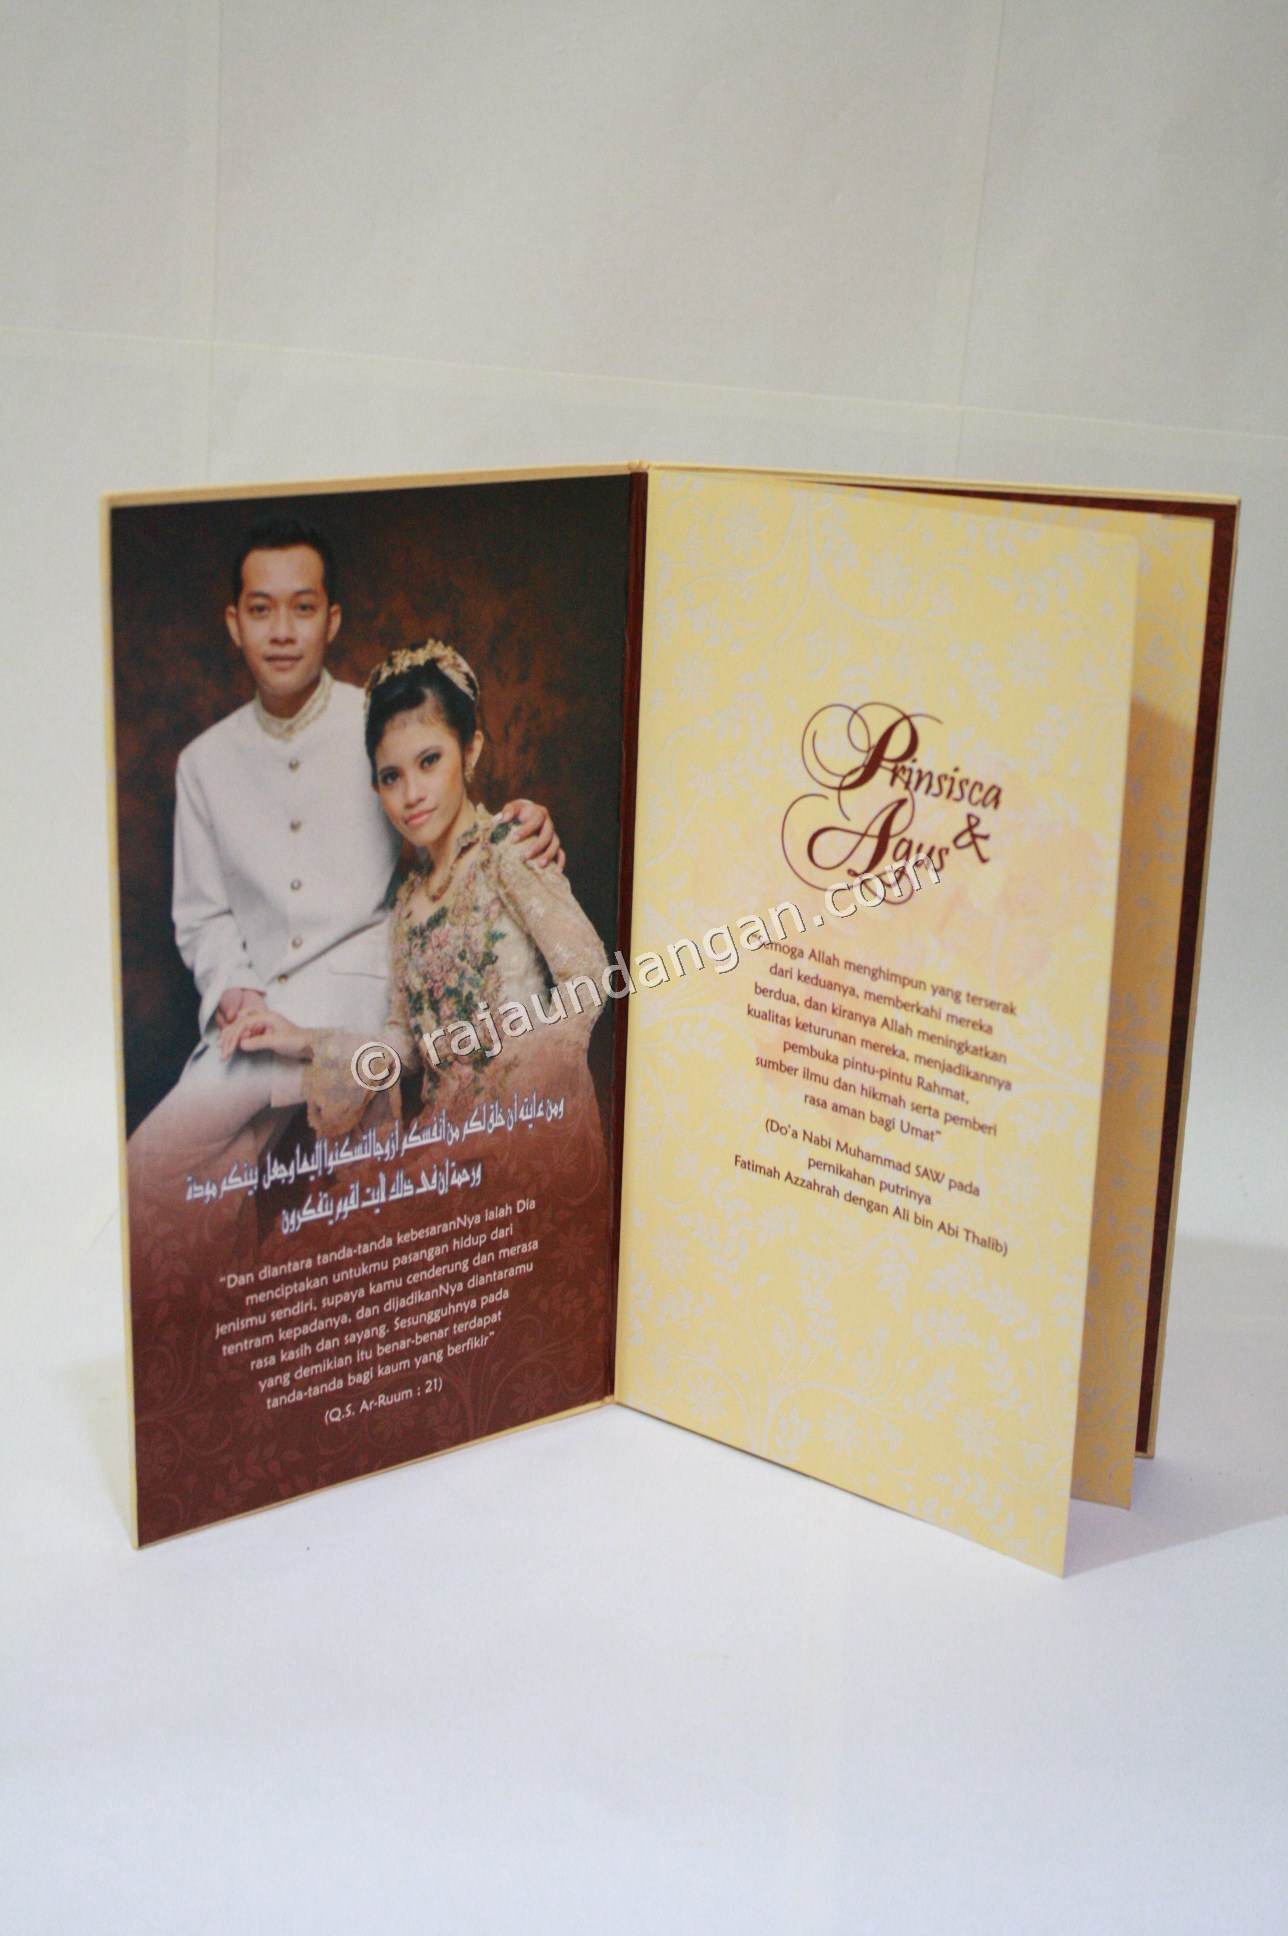 Contoh Kartu Undangan Pernikahan Hardcover Prinsisca dan Agus 4 - Buat Wedding Invitations Elegan Siap Kirim ke Seluruh Wilayah di Kepulauan Talaud